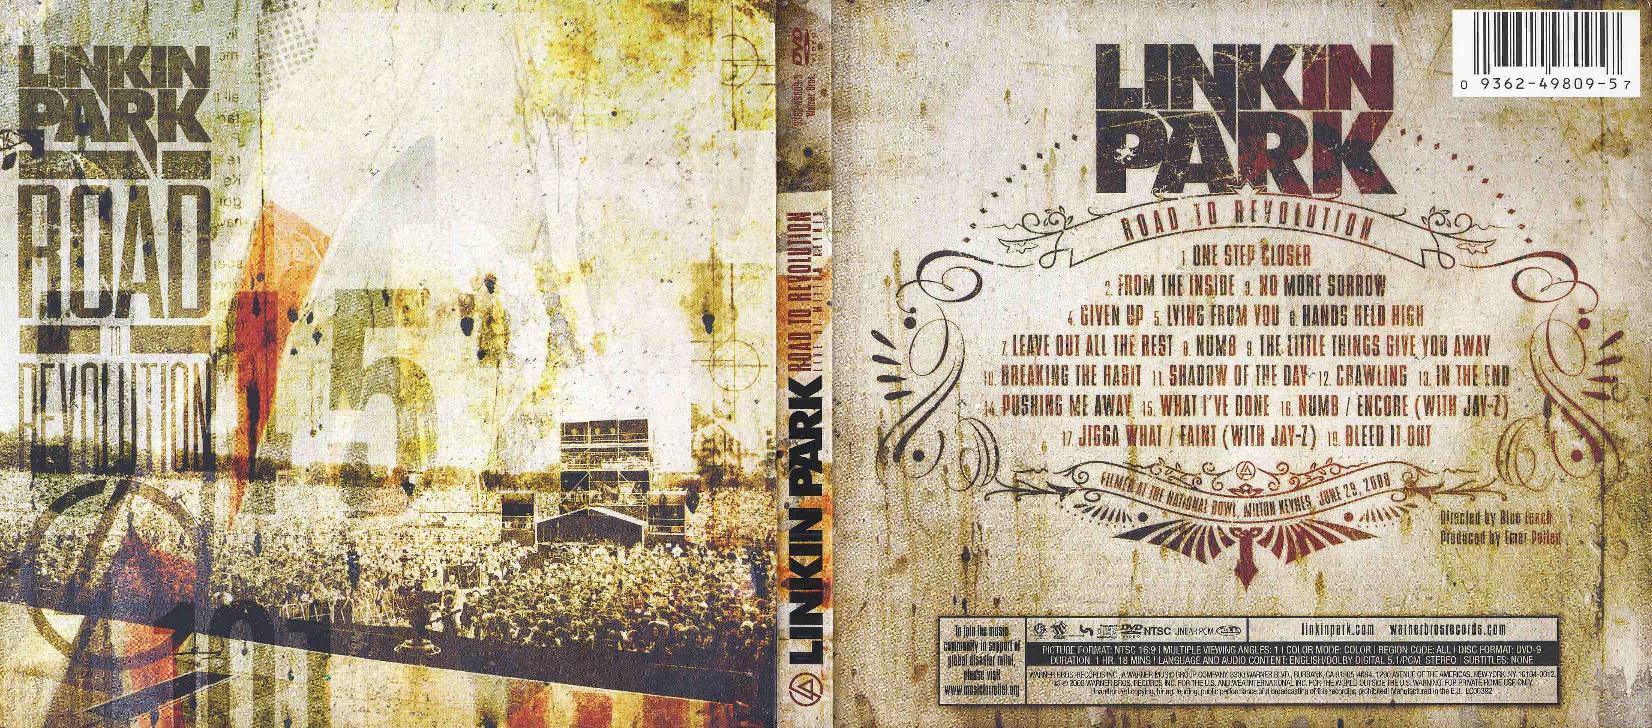 Couverture arrière de l'album Road to revolution de Linkin Park